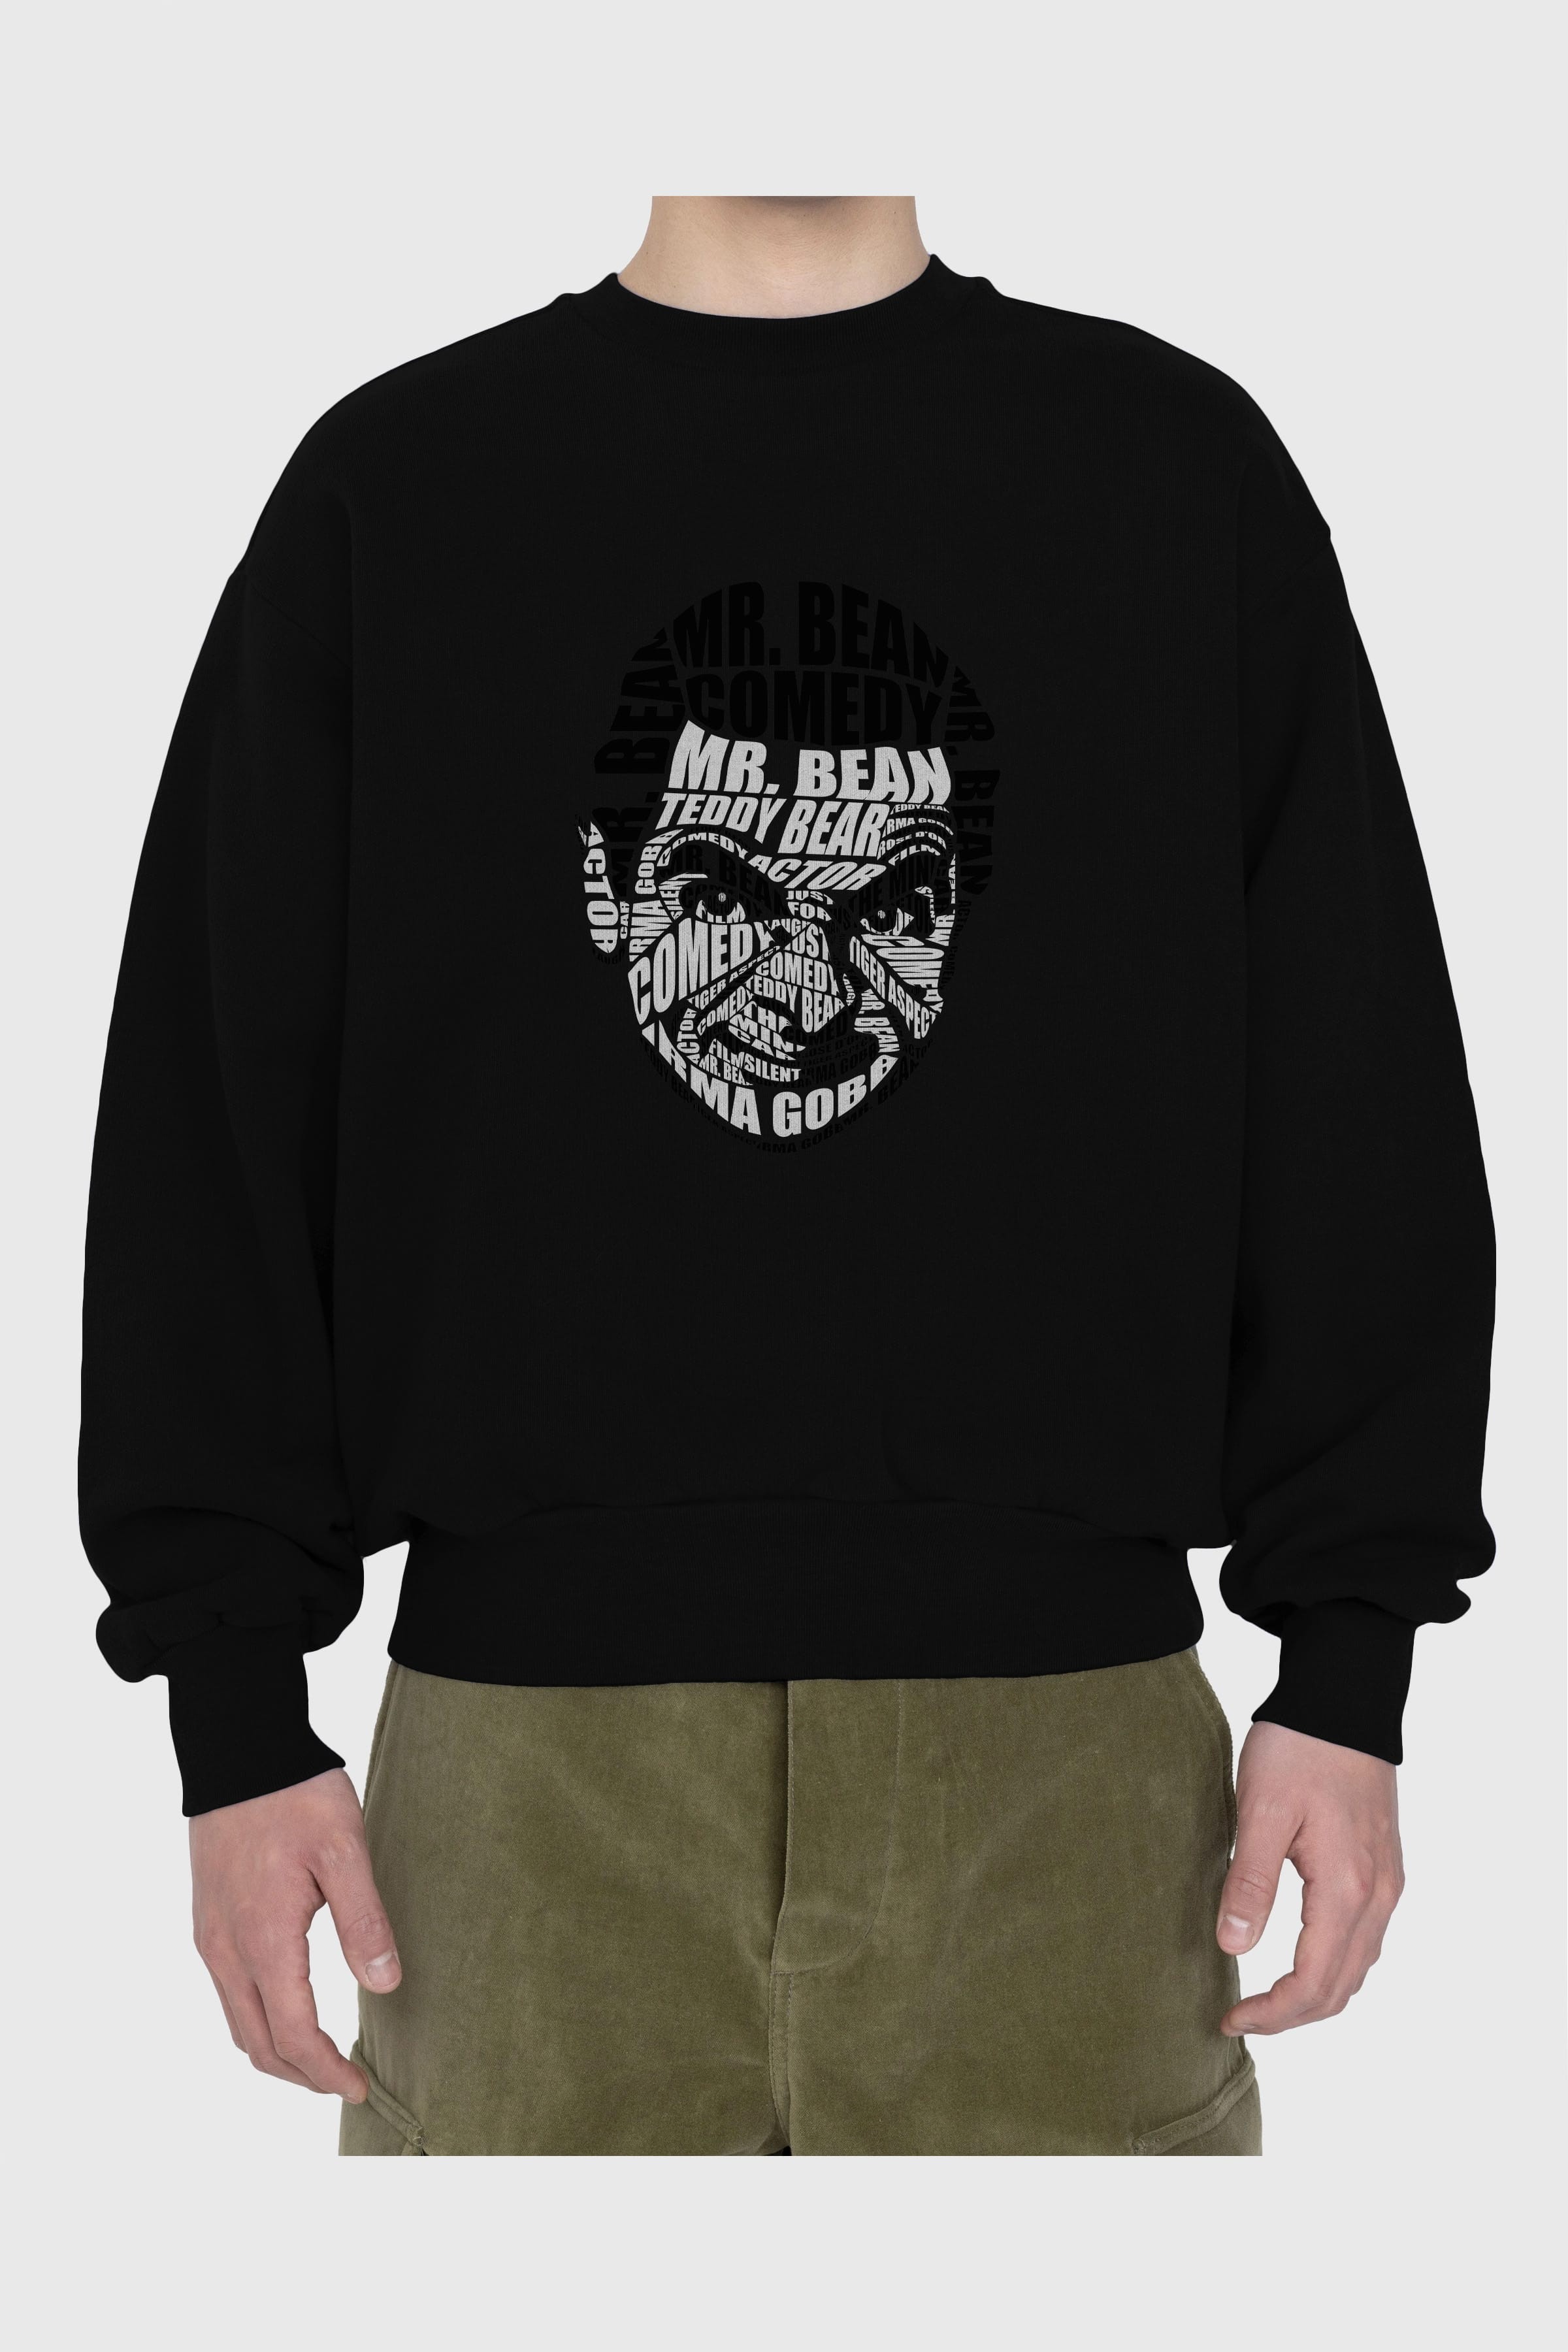 Mr Bean Calligram Ön Baskılı Oversize Sweatshirt Erkek Kadın Unisex